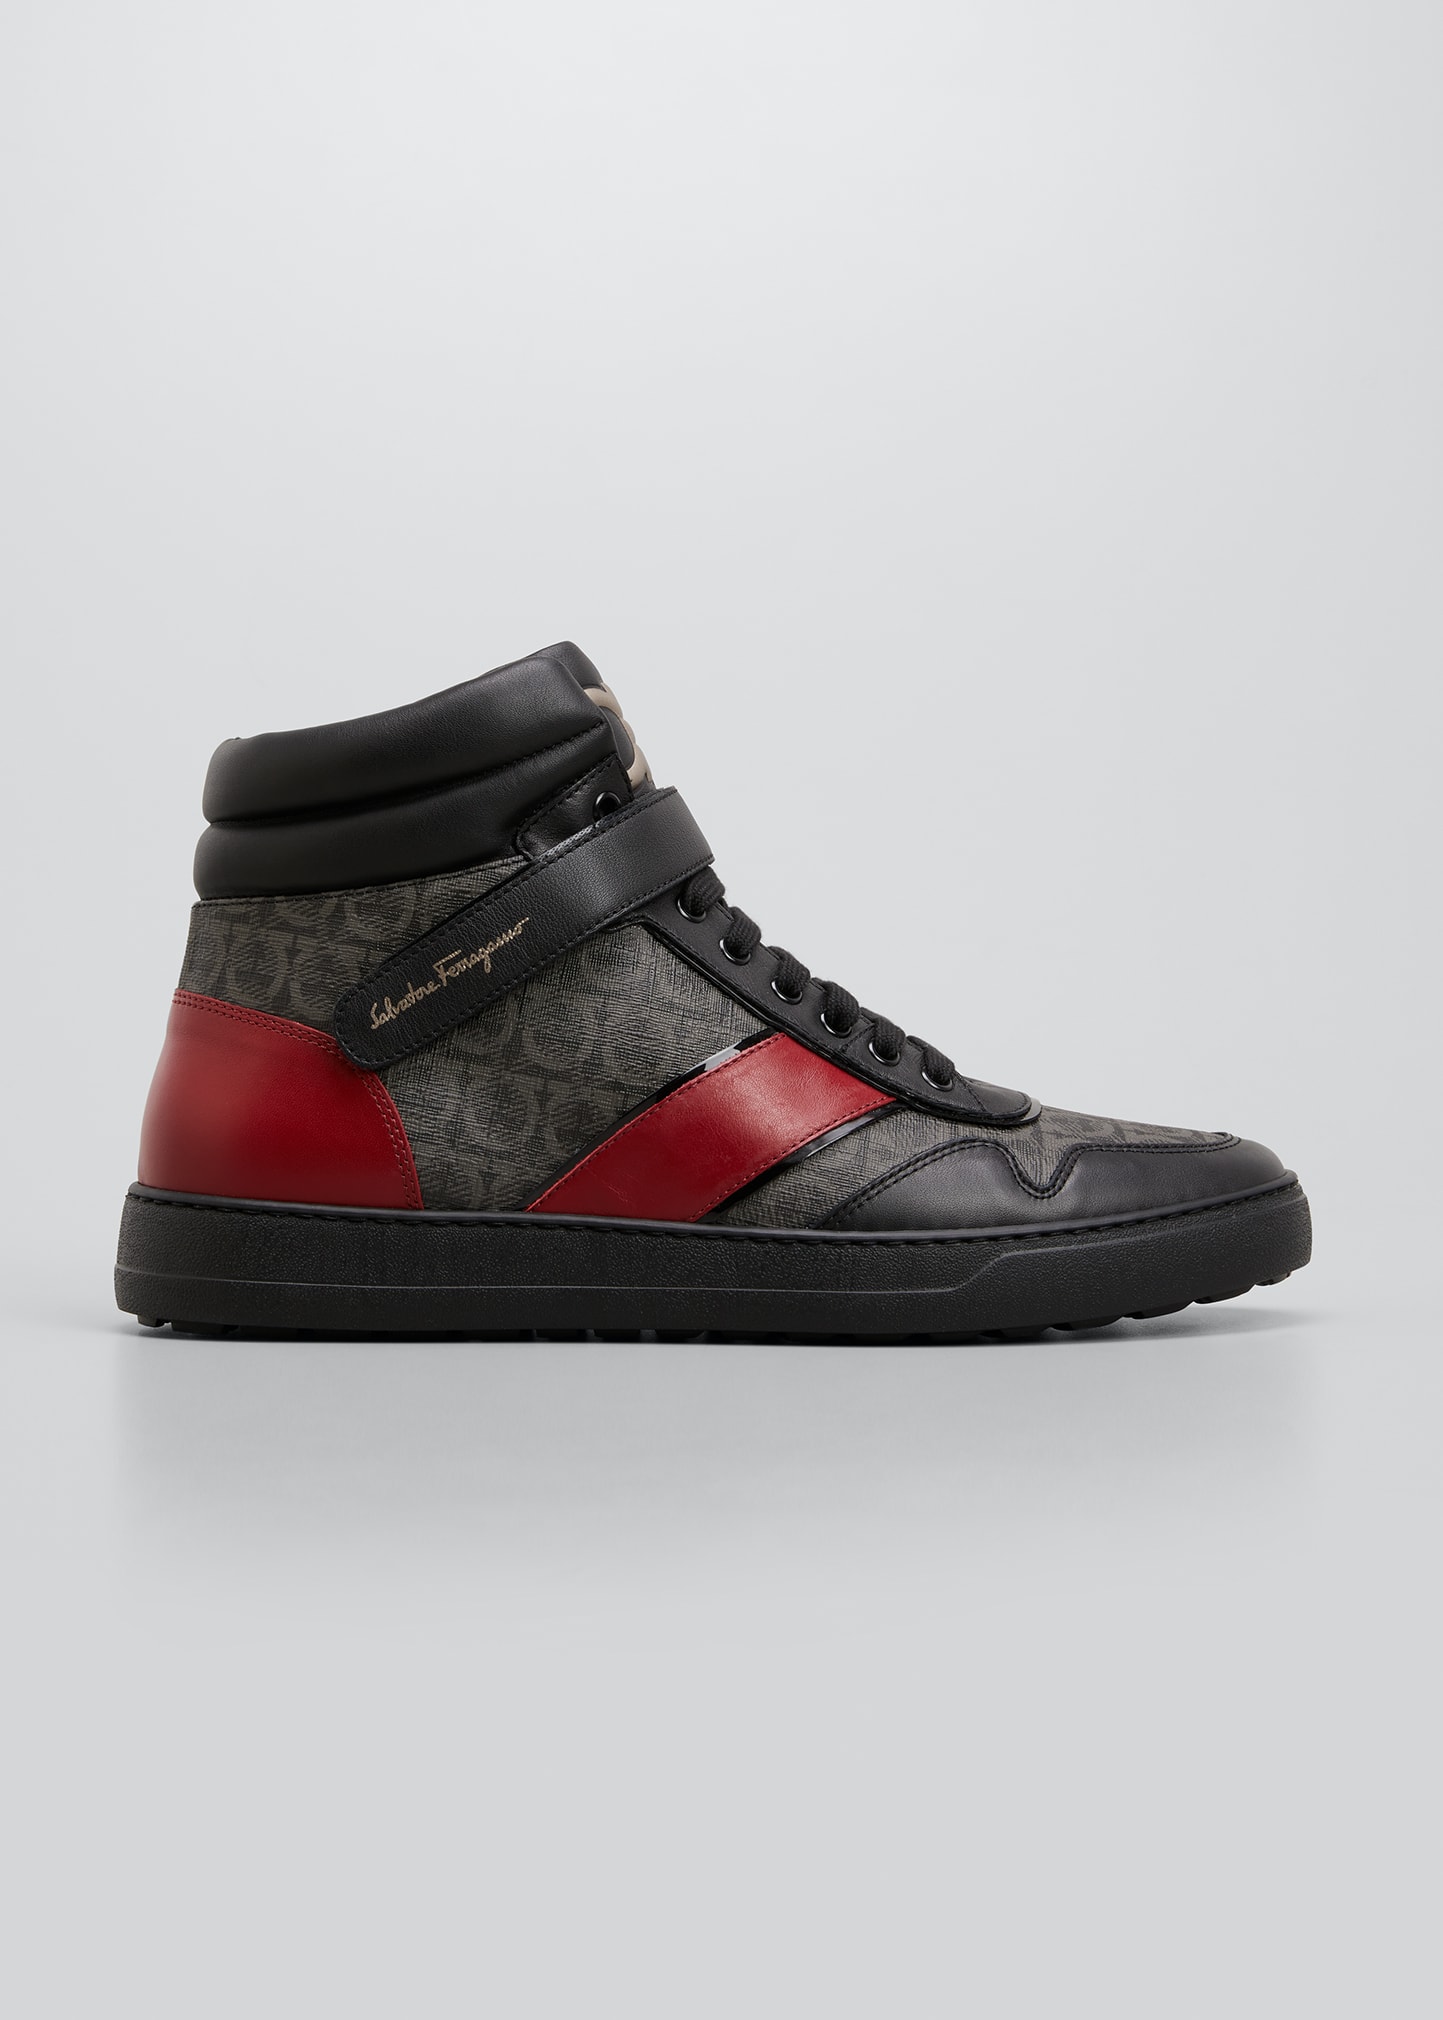 Fendi Men's FF Print Sock Boot Sneakers, Red - Bergdorf Goodman